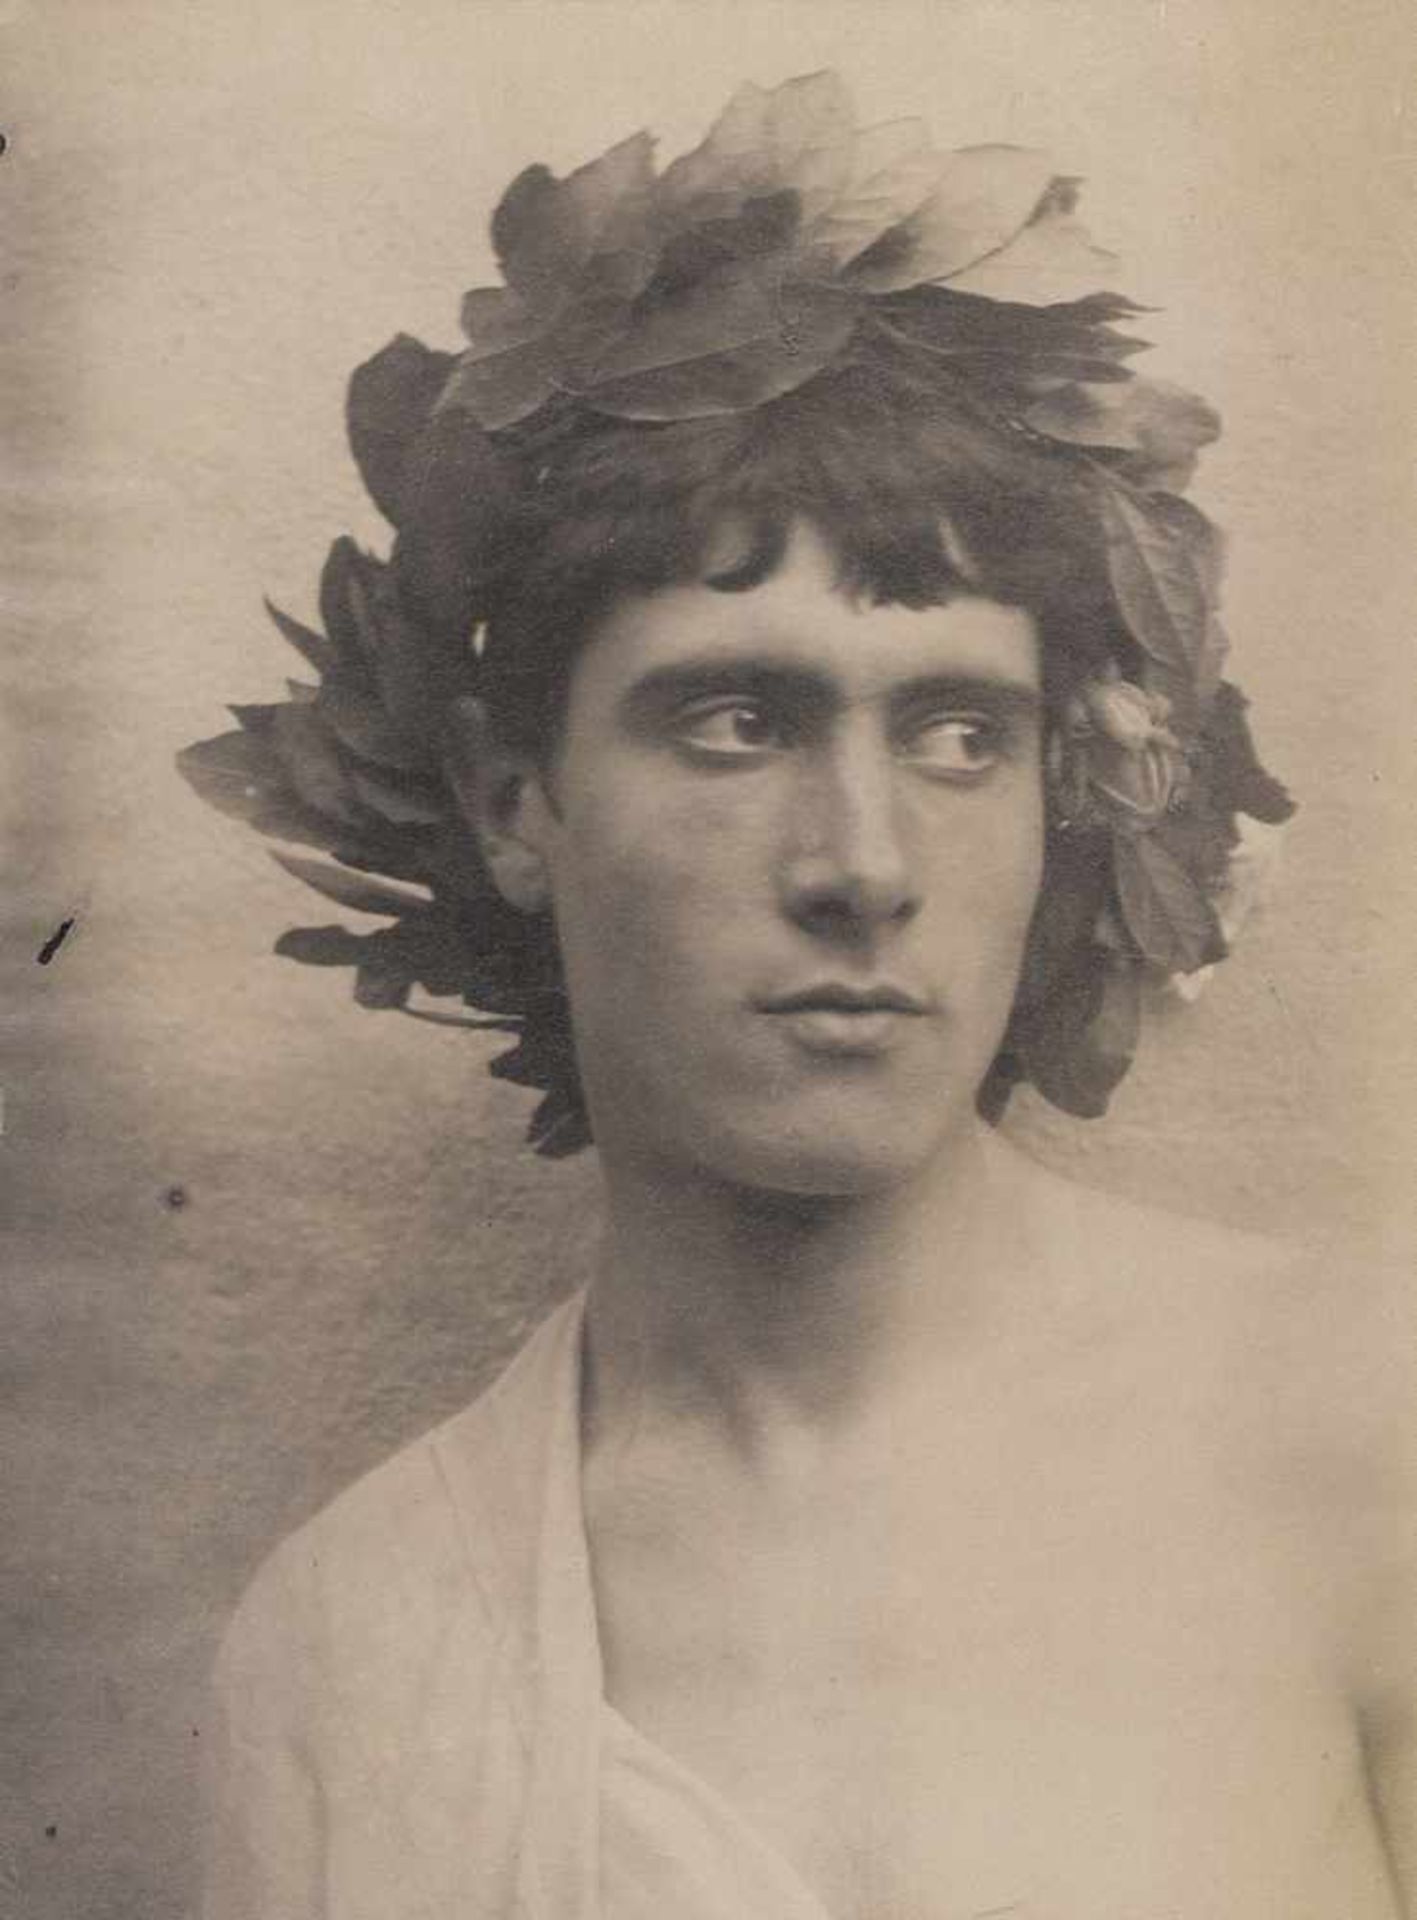 Gloeden, Wilhelm von: Youth with head wreath Youth with head wreath. Circa 1900. Albumen print. 22,8